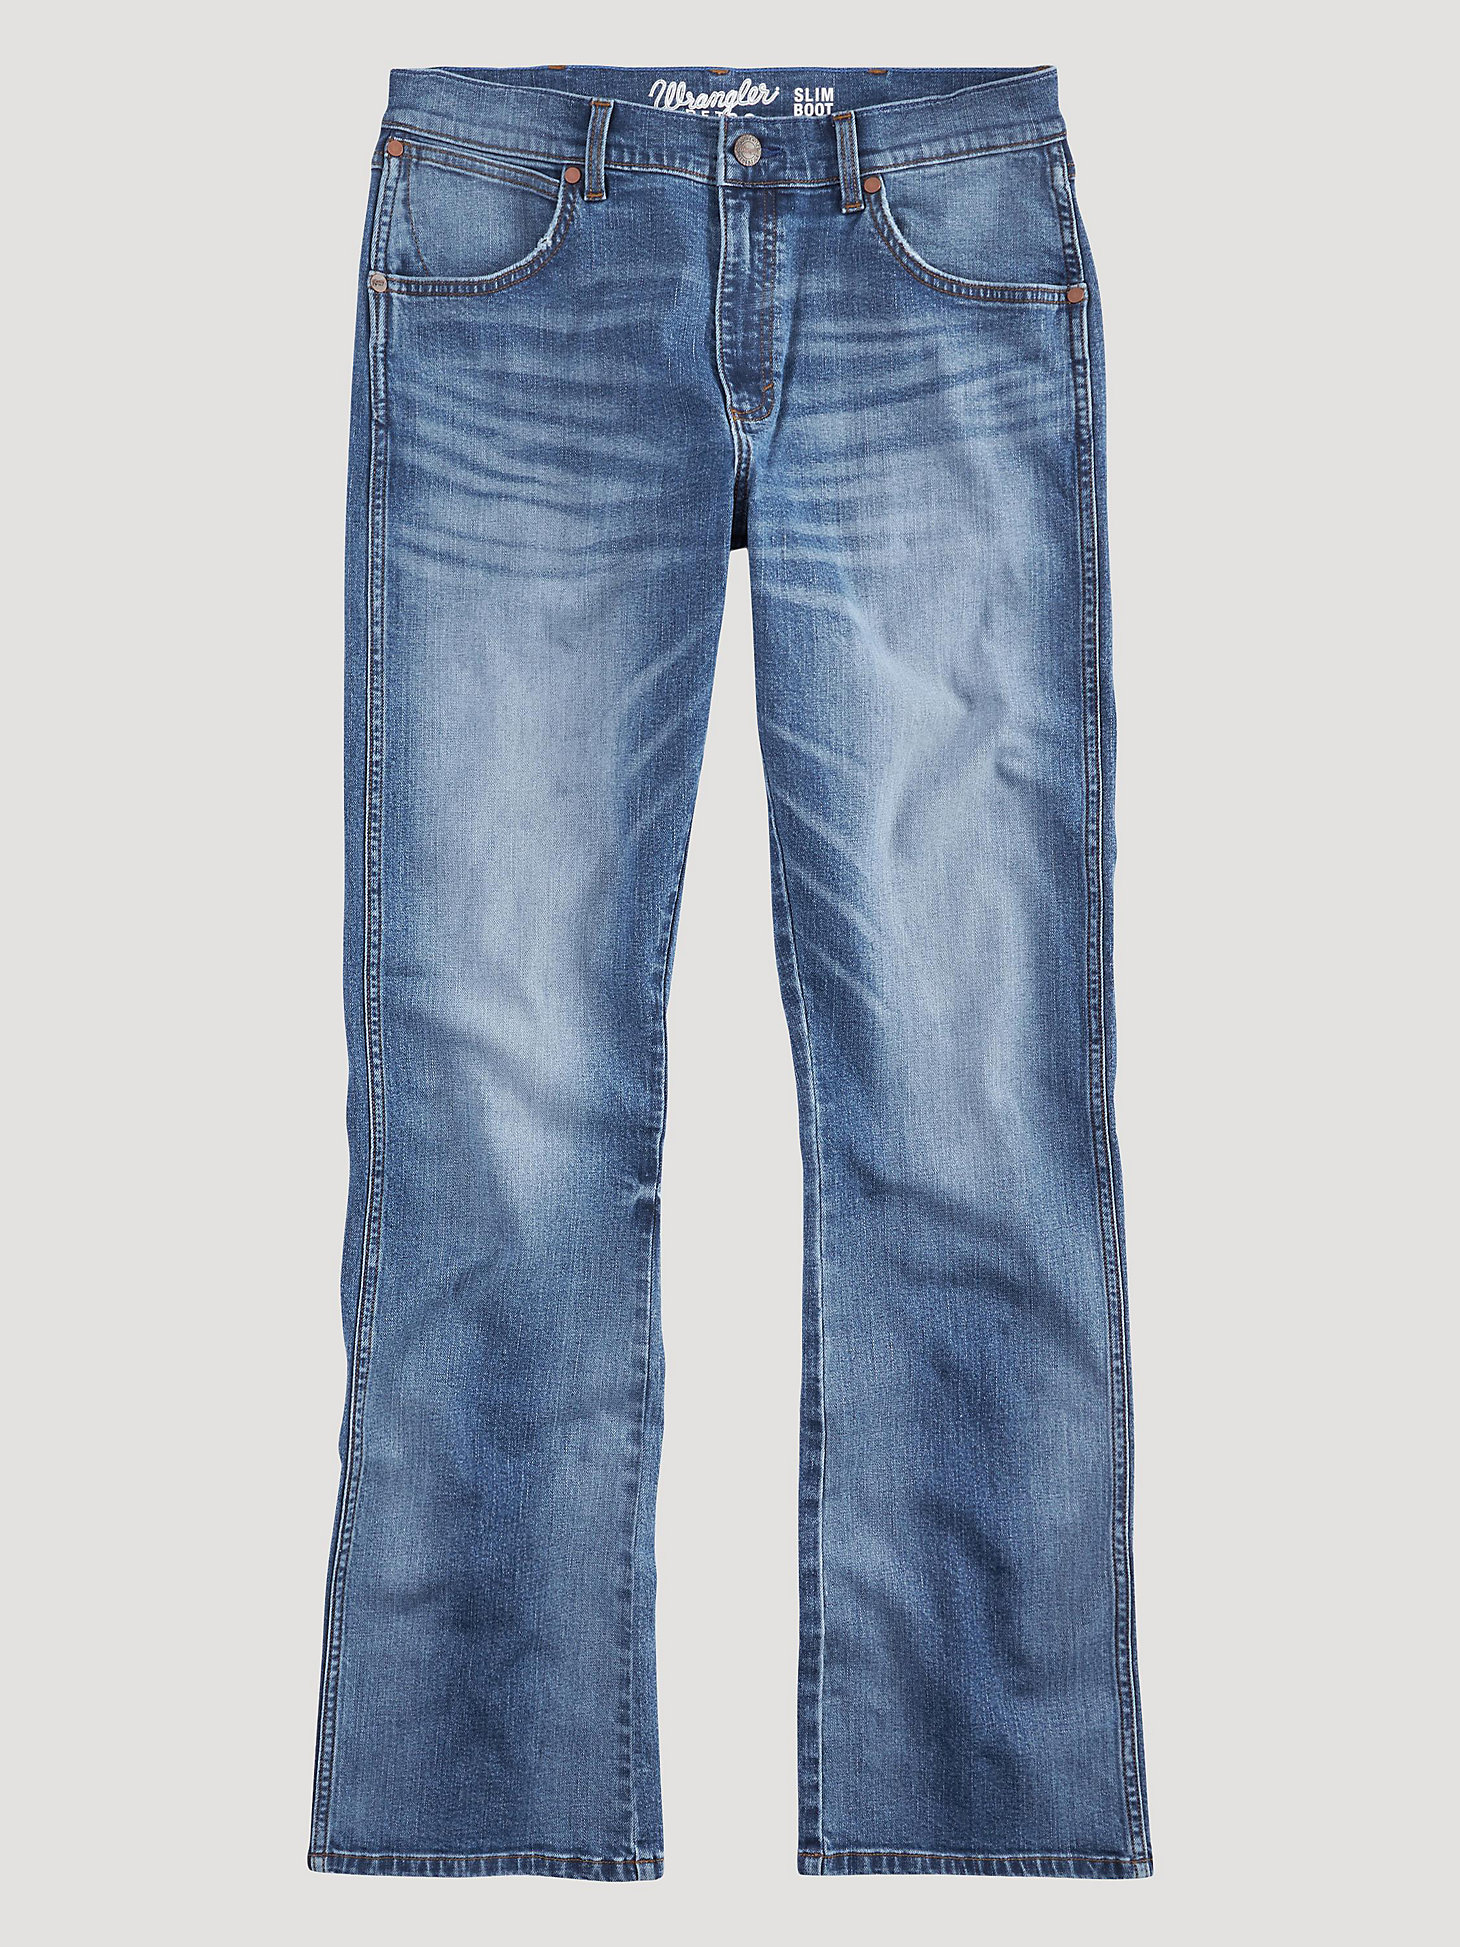 Men's Wrangler Retro® Slim Fit Bootcut Jean in Llano alternative view 6